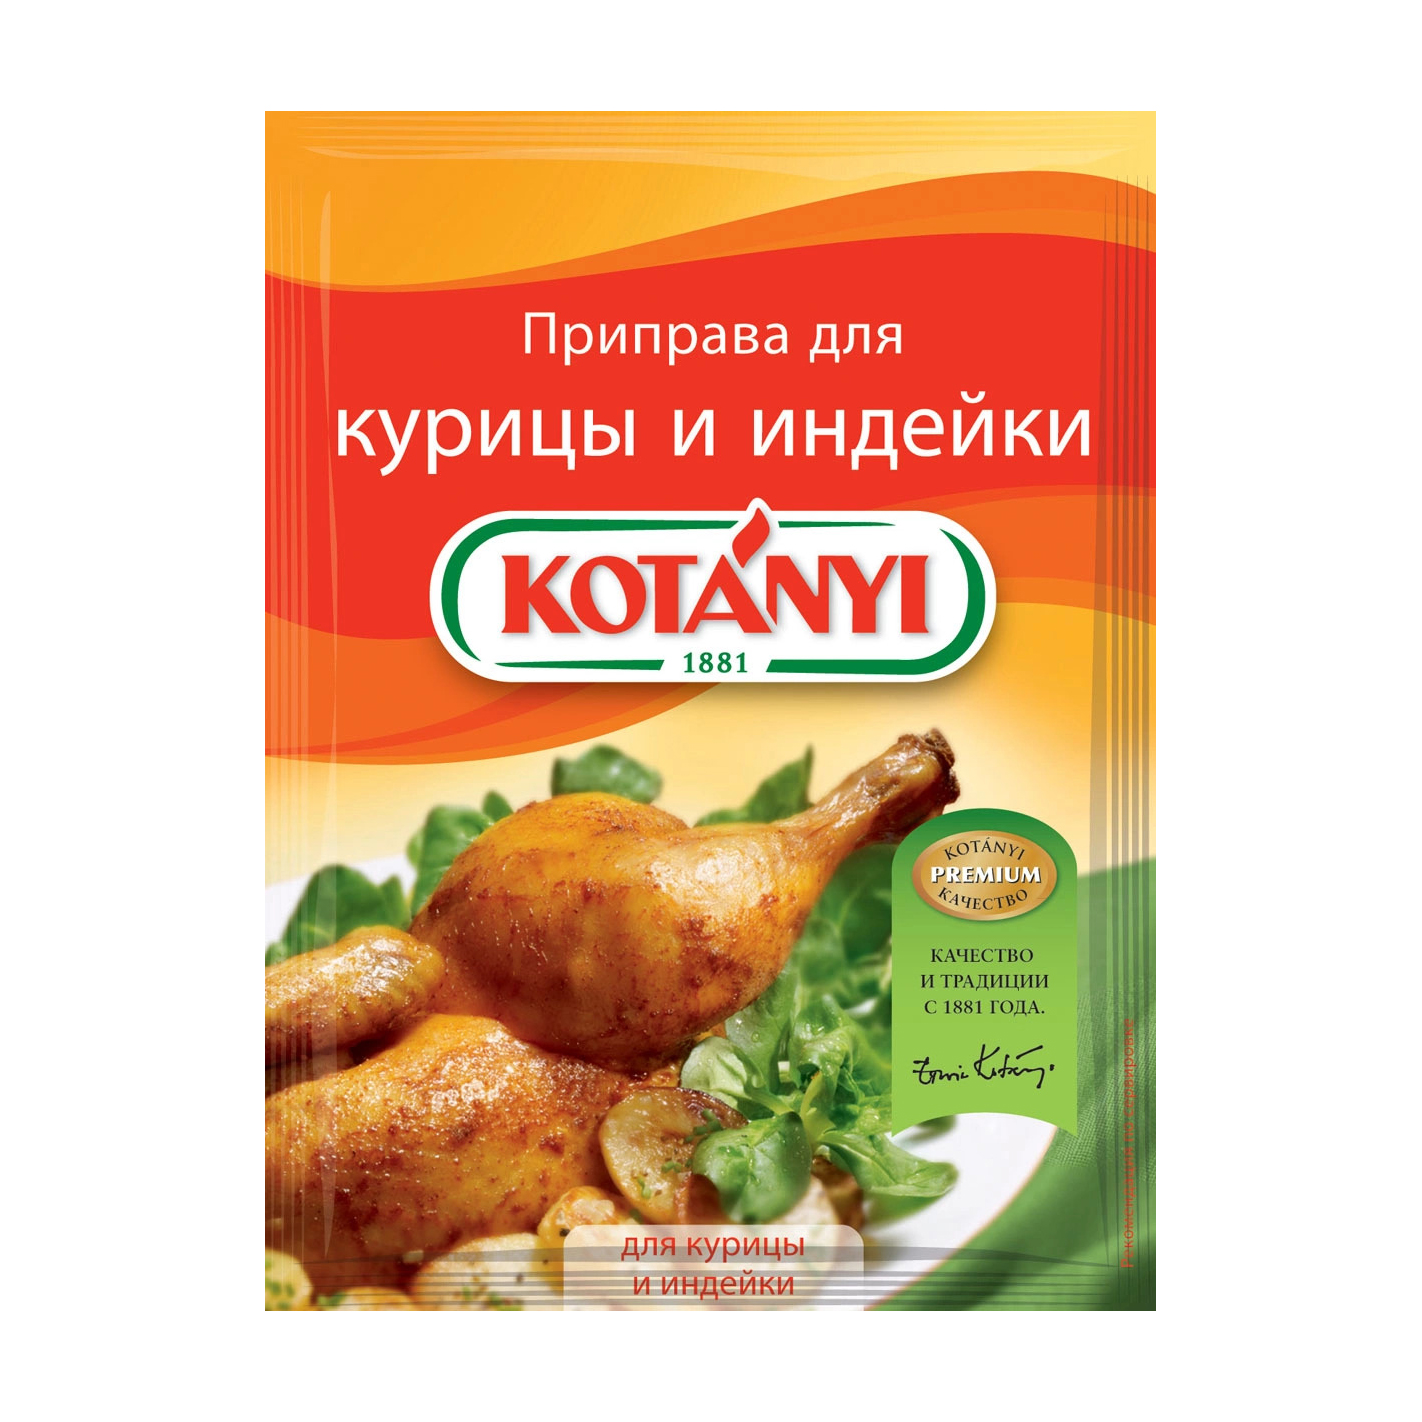 Приправа Kotanyi для курицы и индейки 30 г хмели сунели kotanyi 30 гр